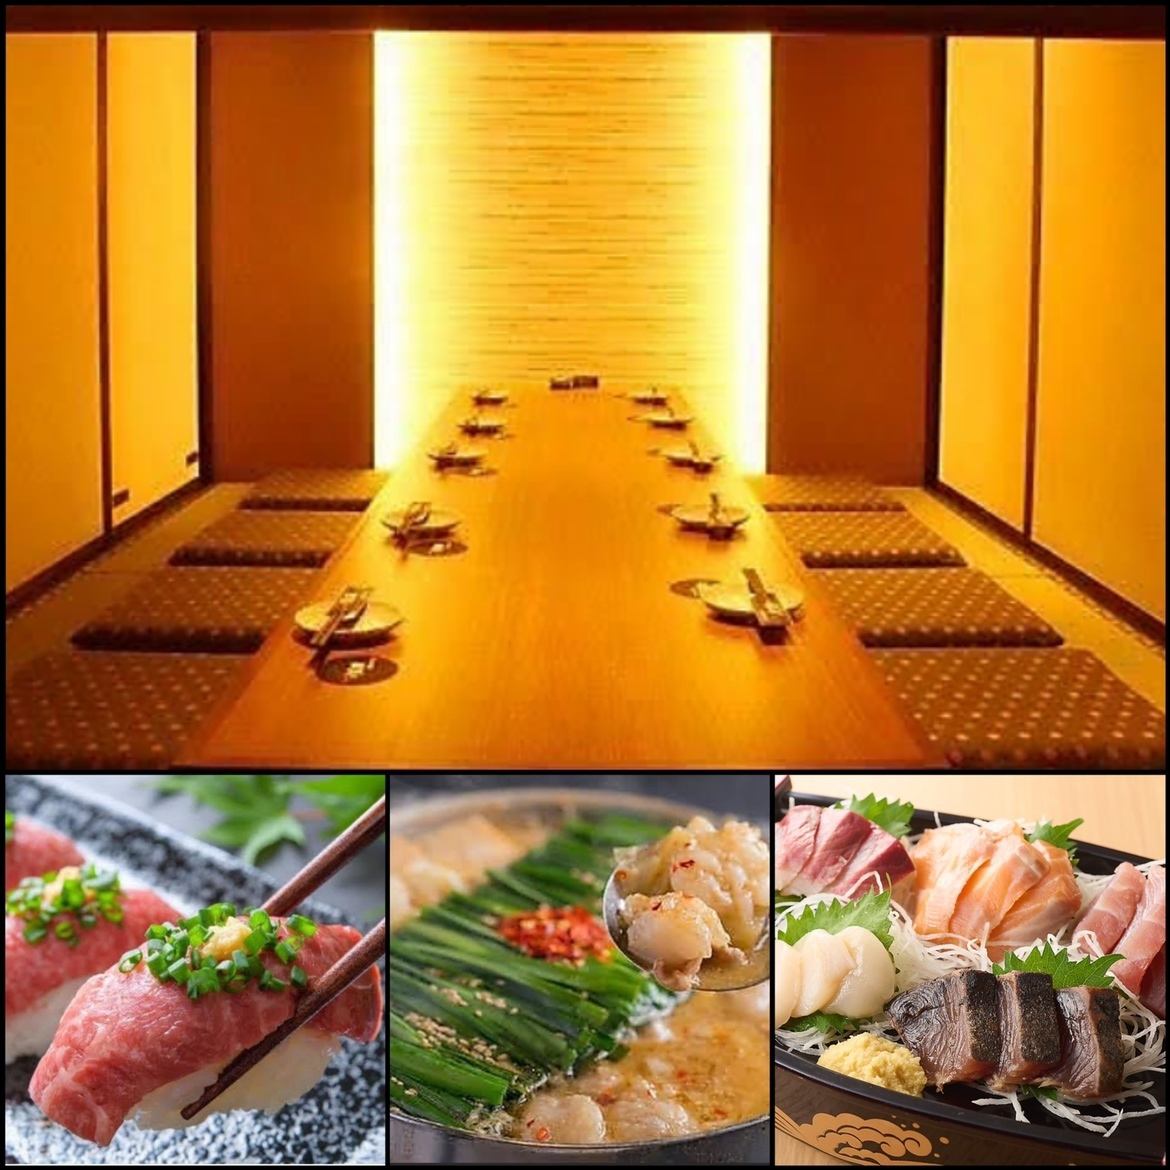 在完全私密的日式围炉餐桌上享用精致的肉类和鱼类菜肴♪